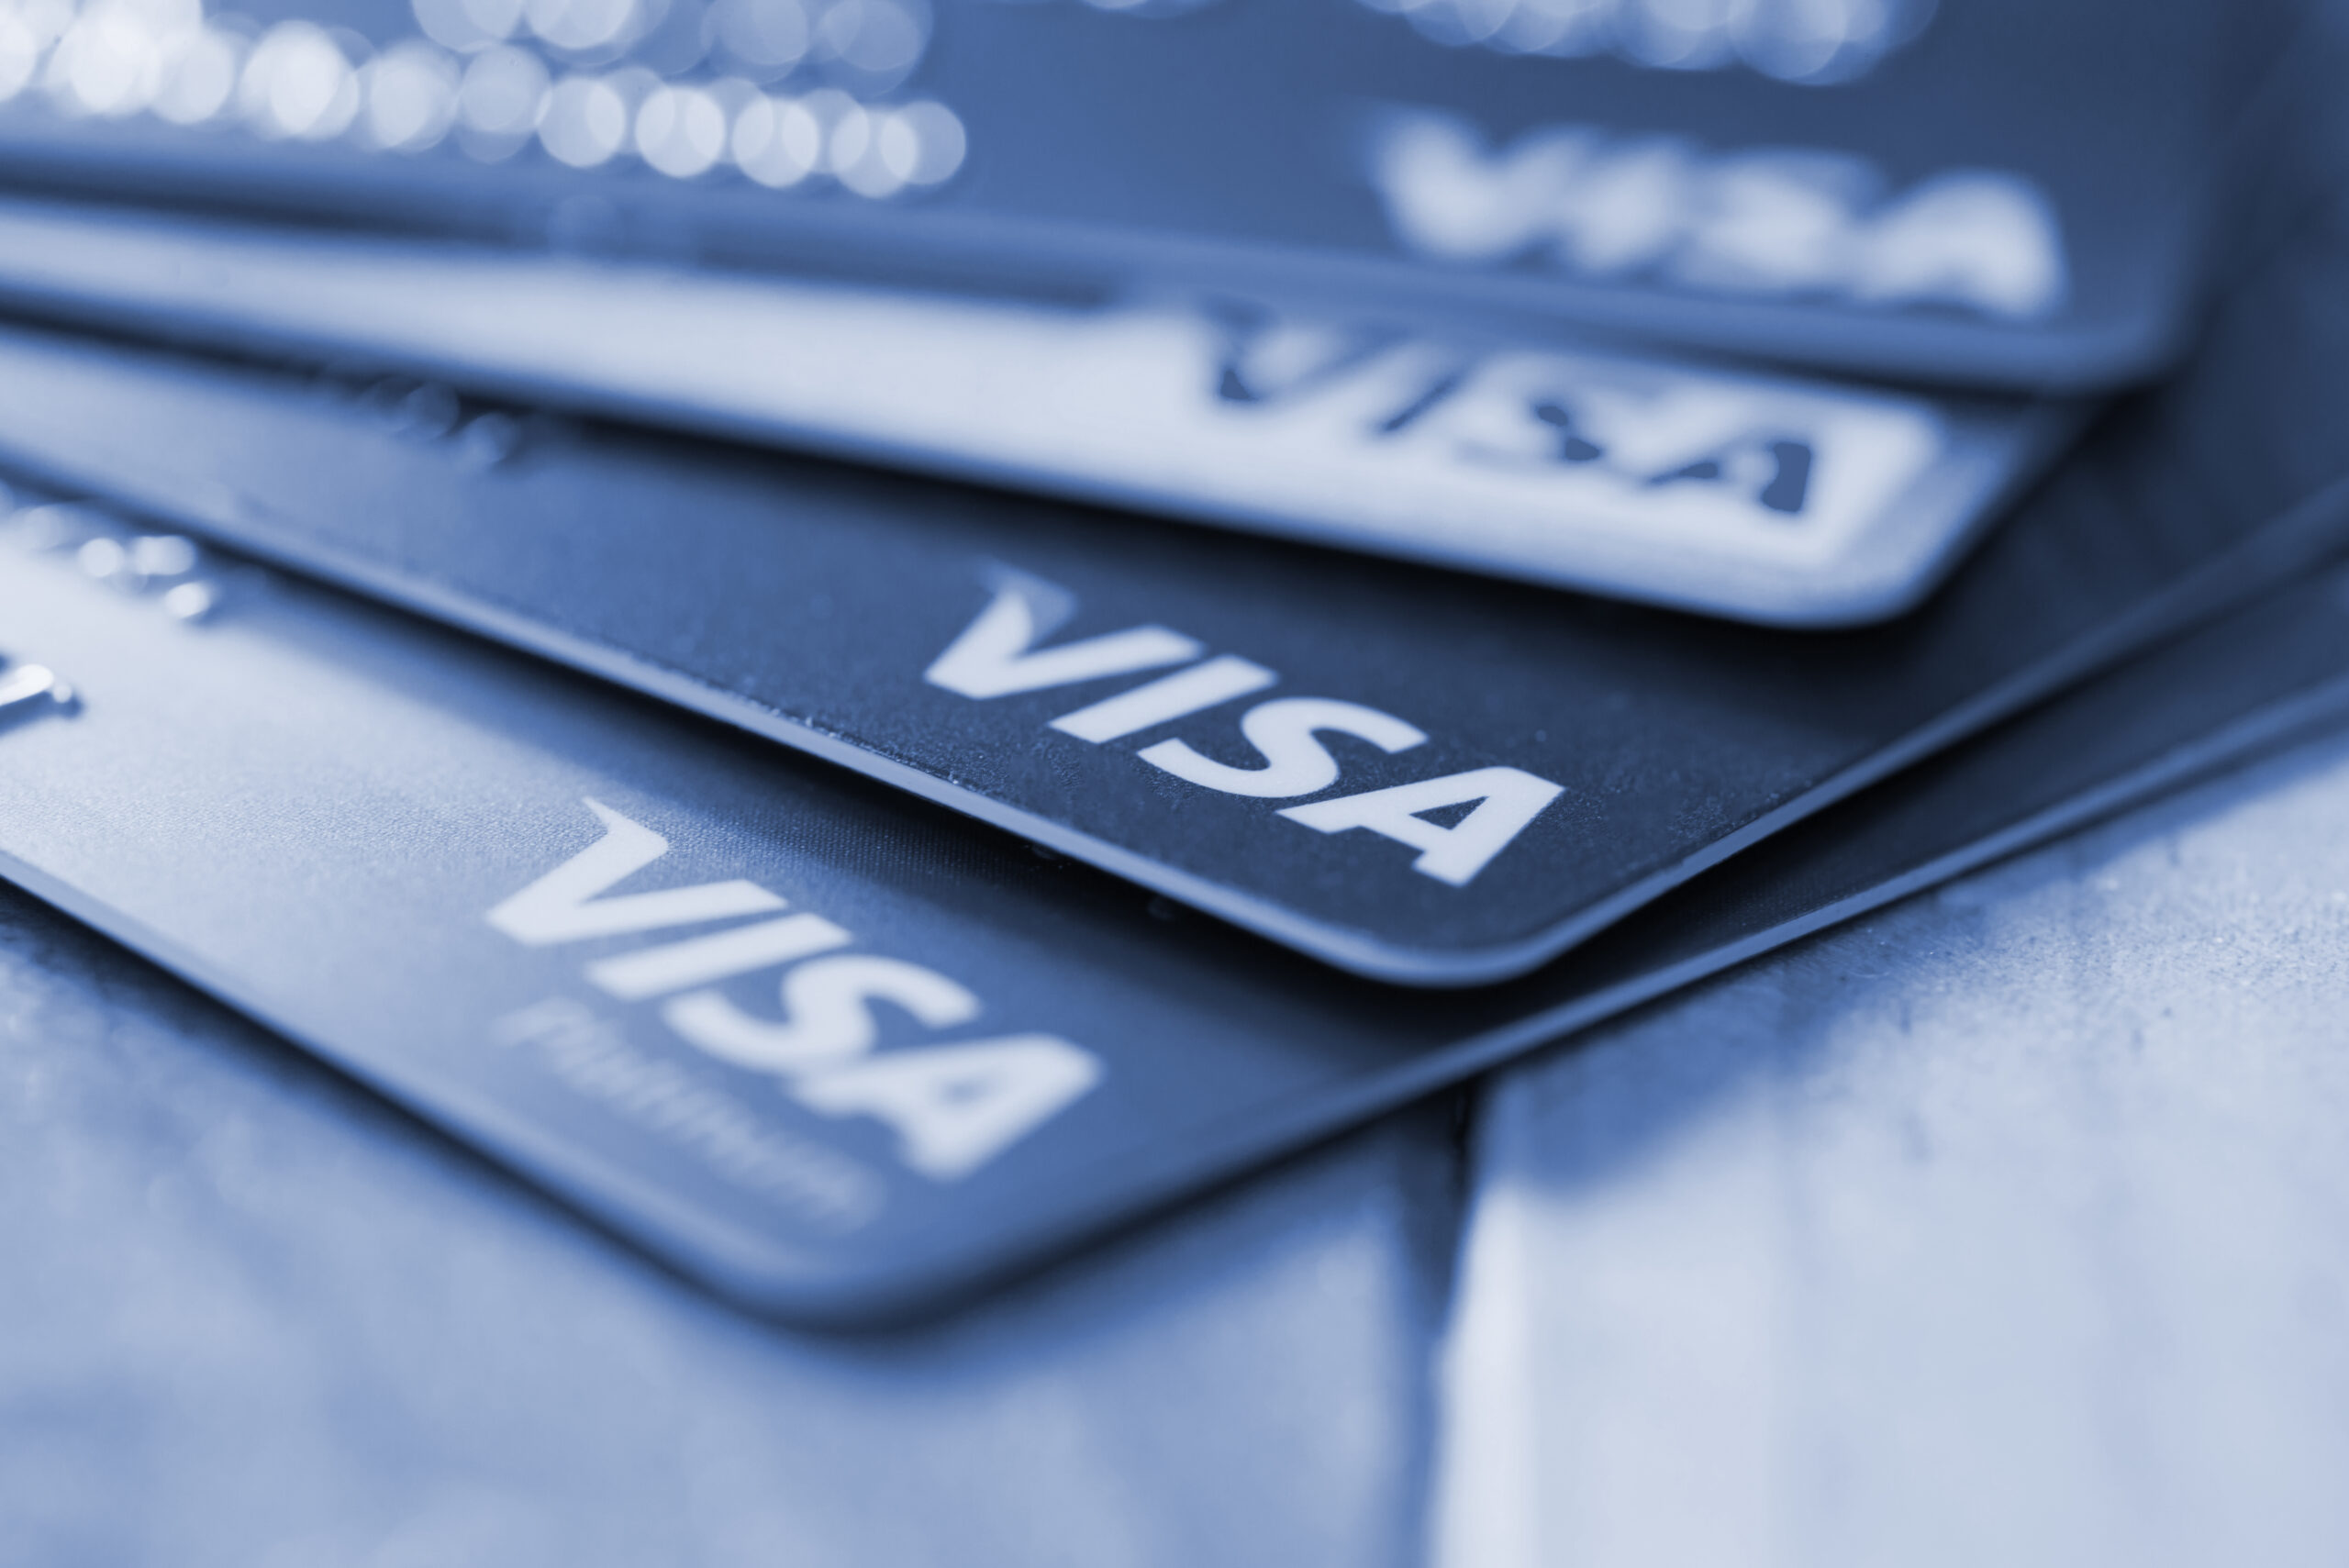 Banco Central aprova mudanças nas regras de pagamento da Visa; entenda